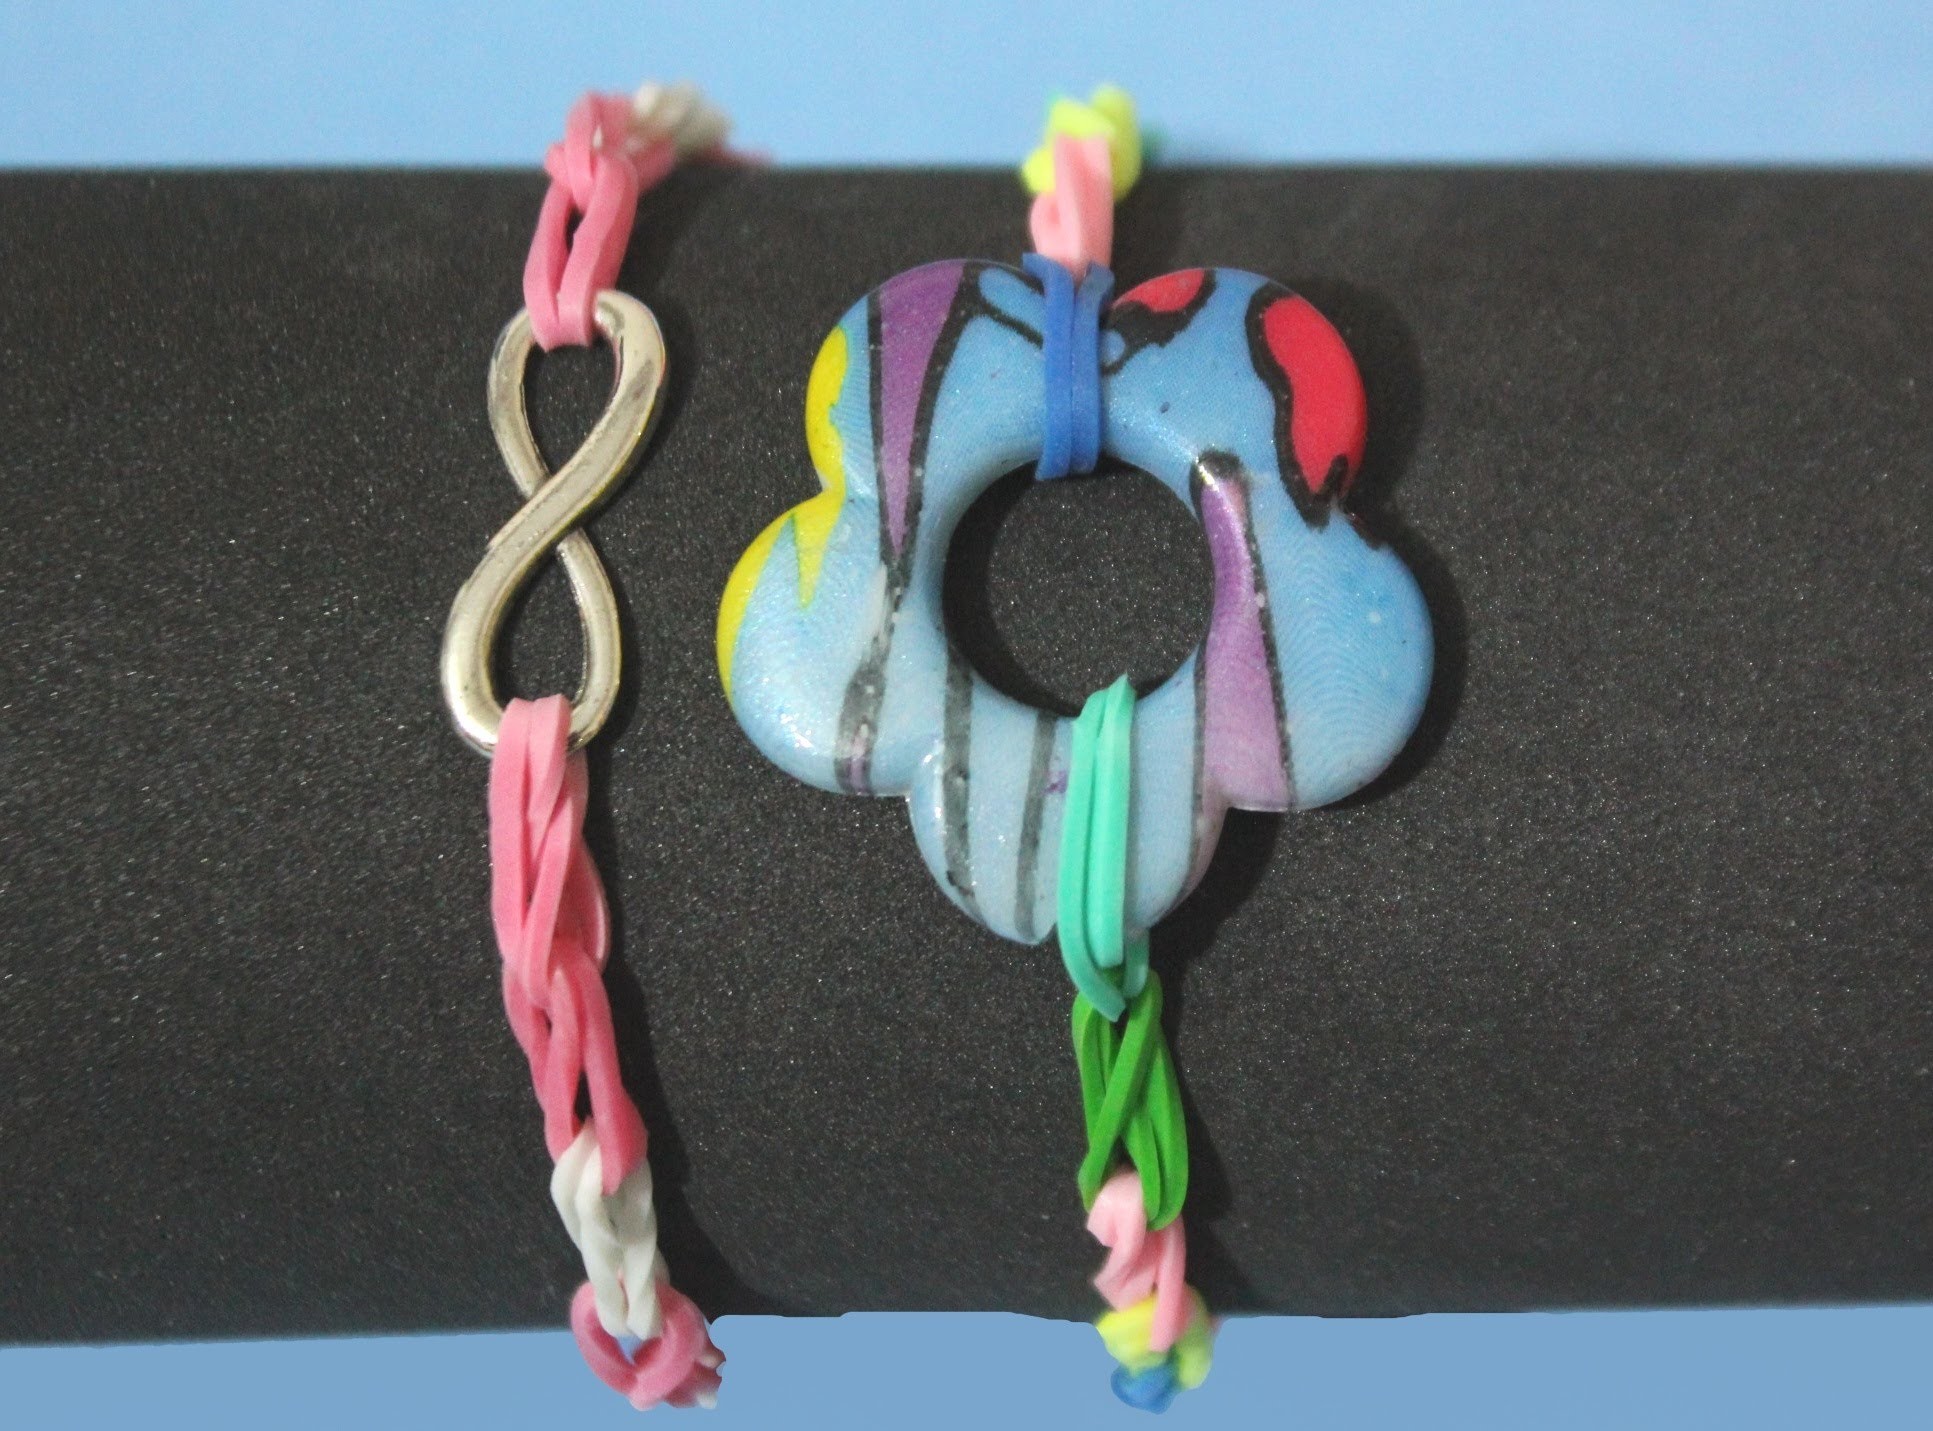 Pulsera de ligas o gomitas con abalorios. Rainbow Loom bracelet